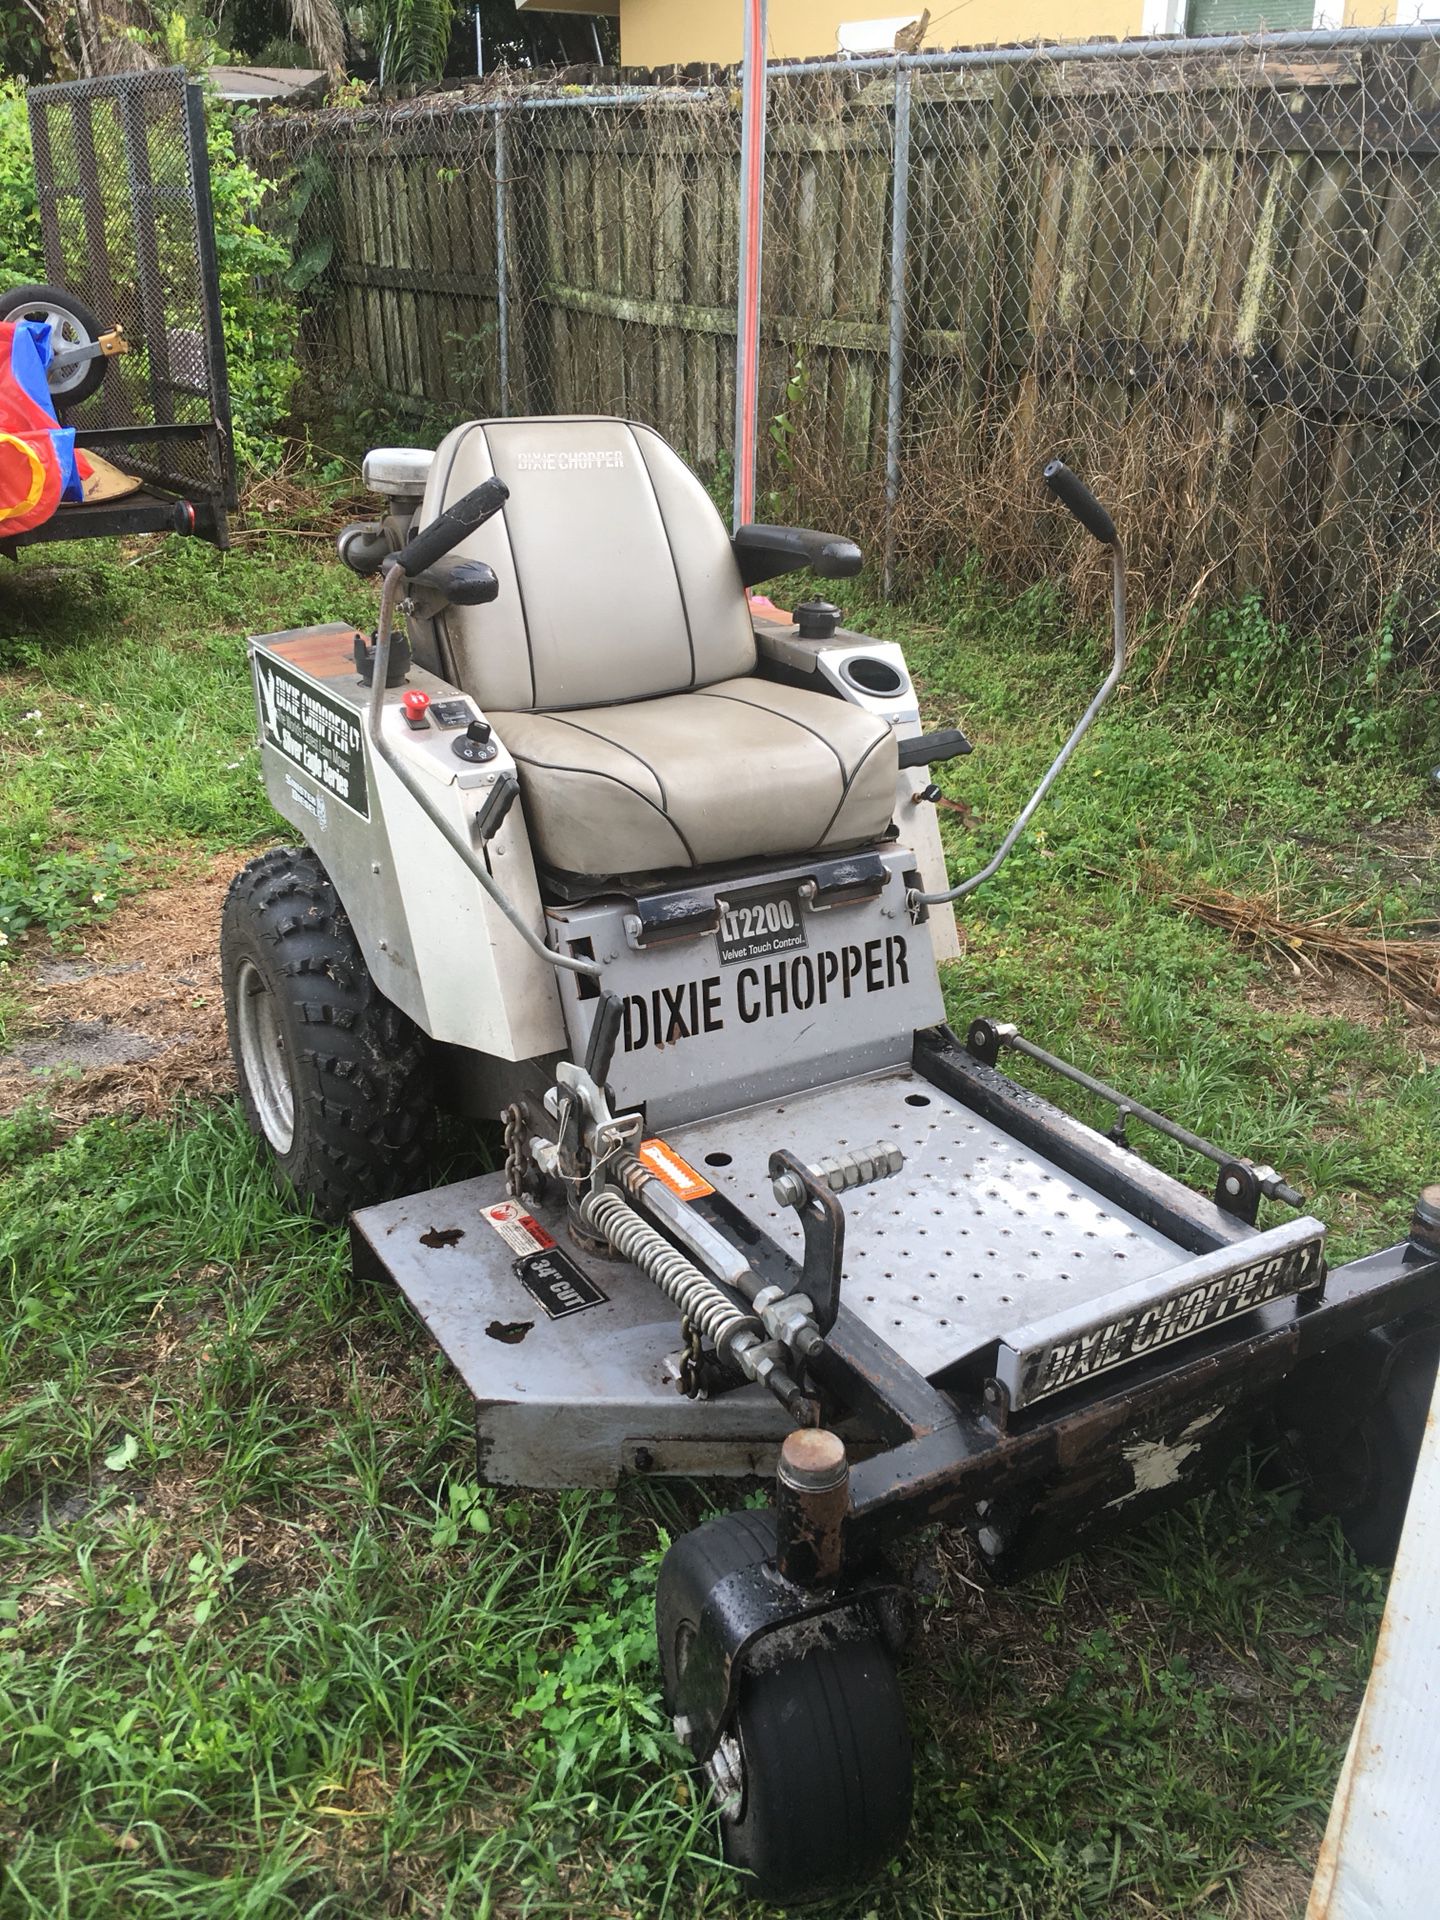 Dixie chopper lawn Mower